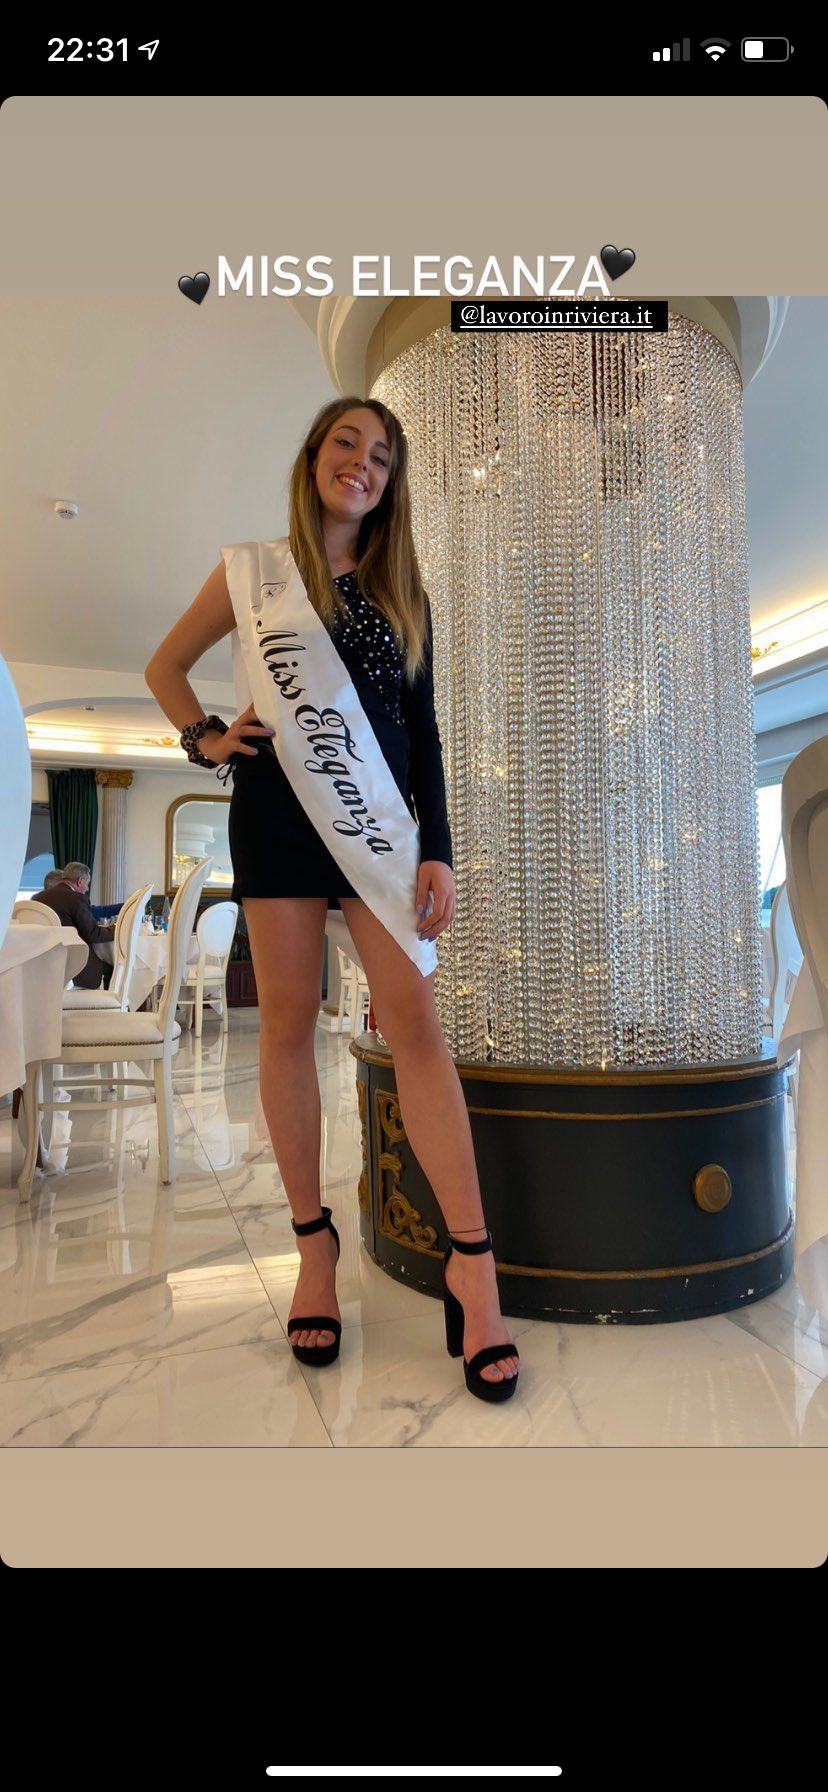 foto di Miss Riviera edizioni passate